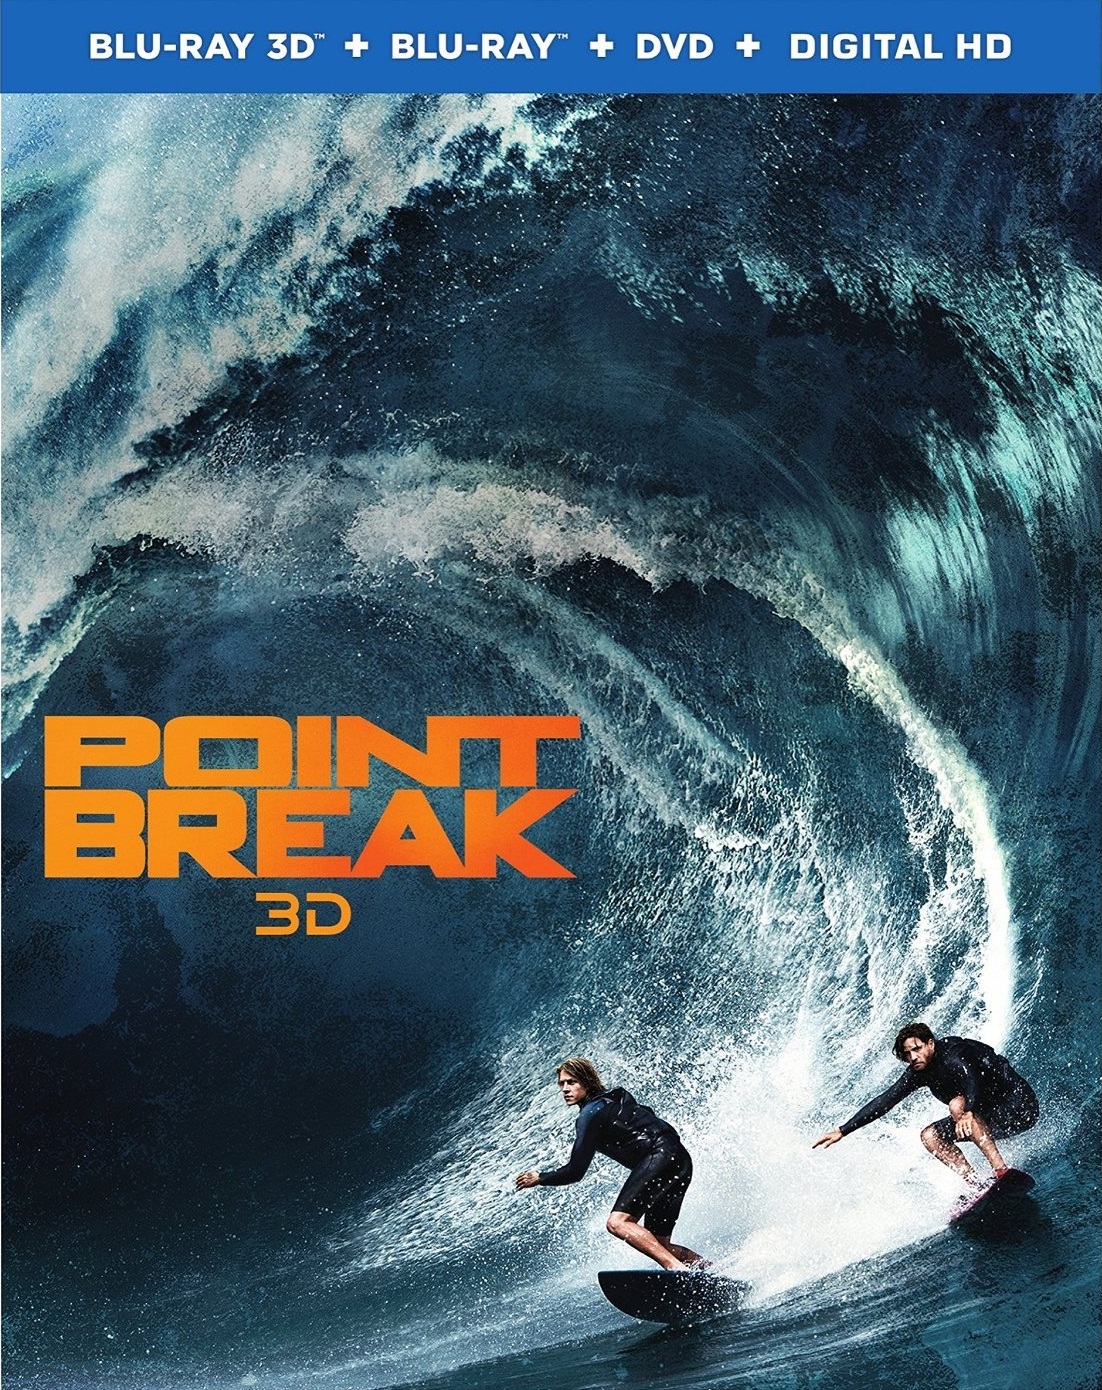 Point Break (2015) Backgrounds, Compatible - PC, Mobile, Gadgets| 1102x1390 px